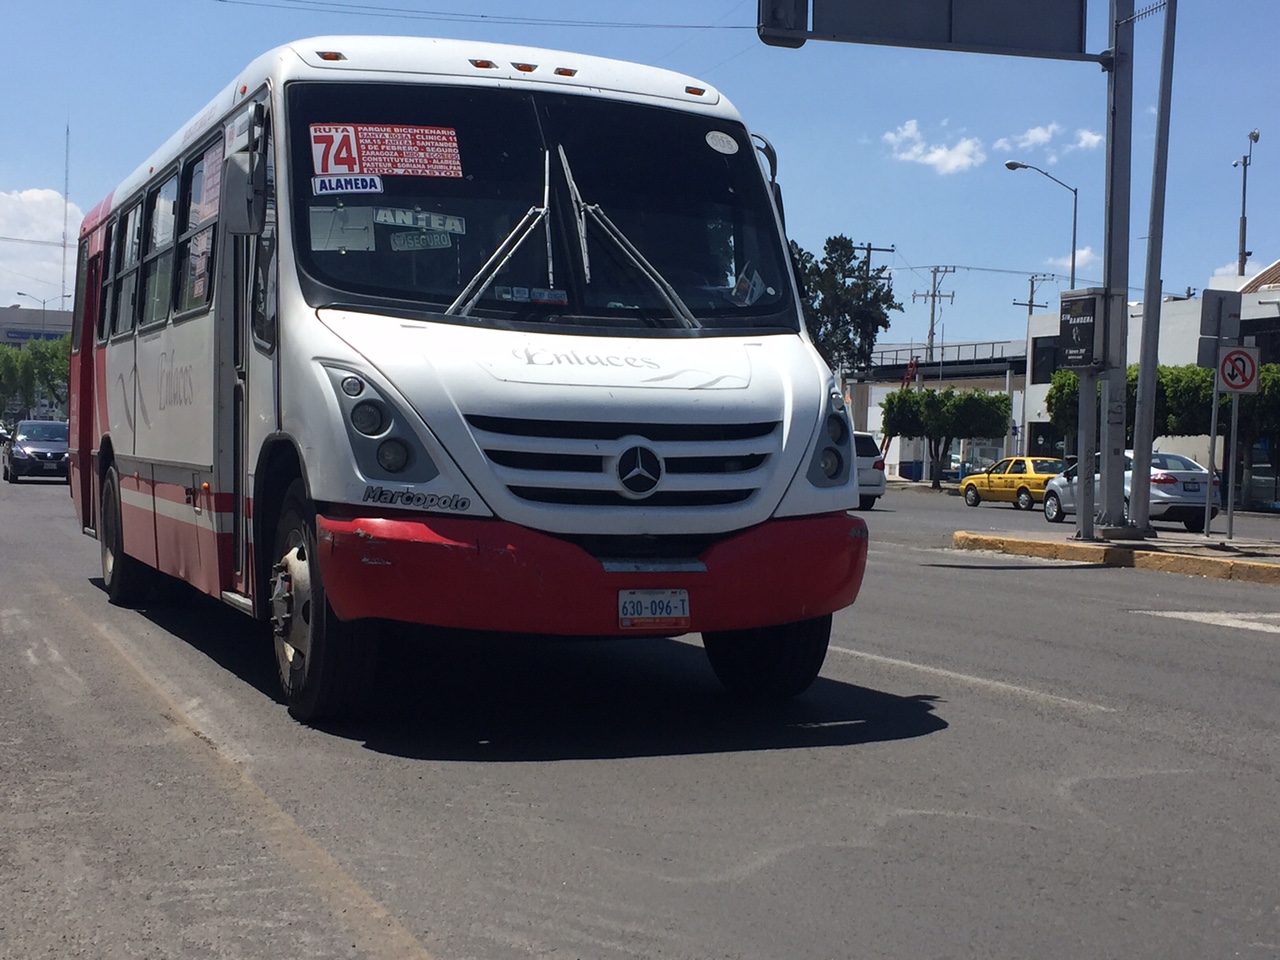  “Aunque no se retiren concesiones, el gobierno regulará el transporte público”: Pancho Domínguez